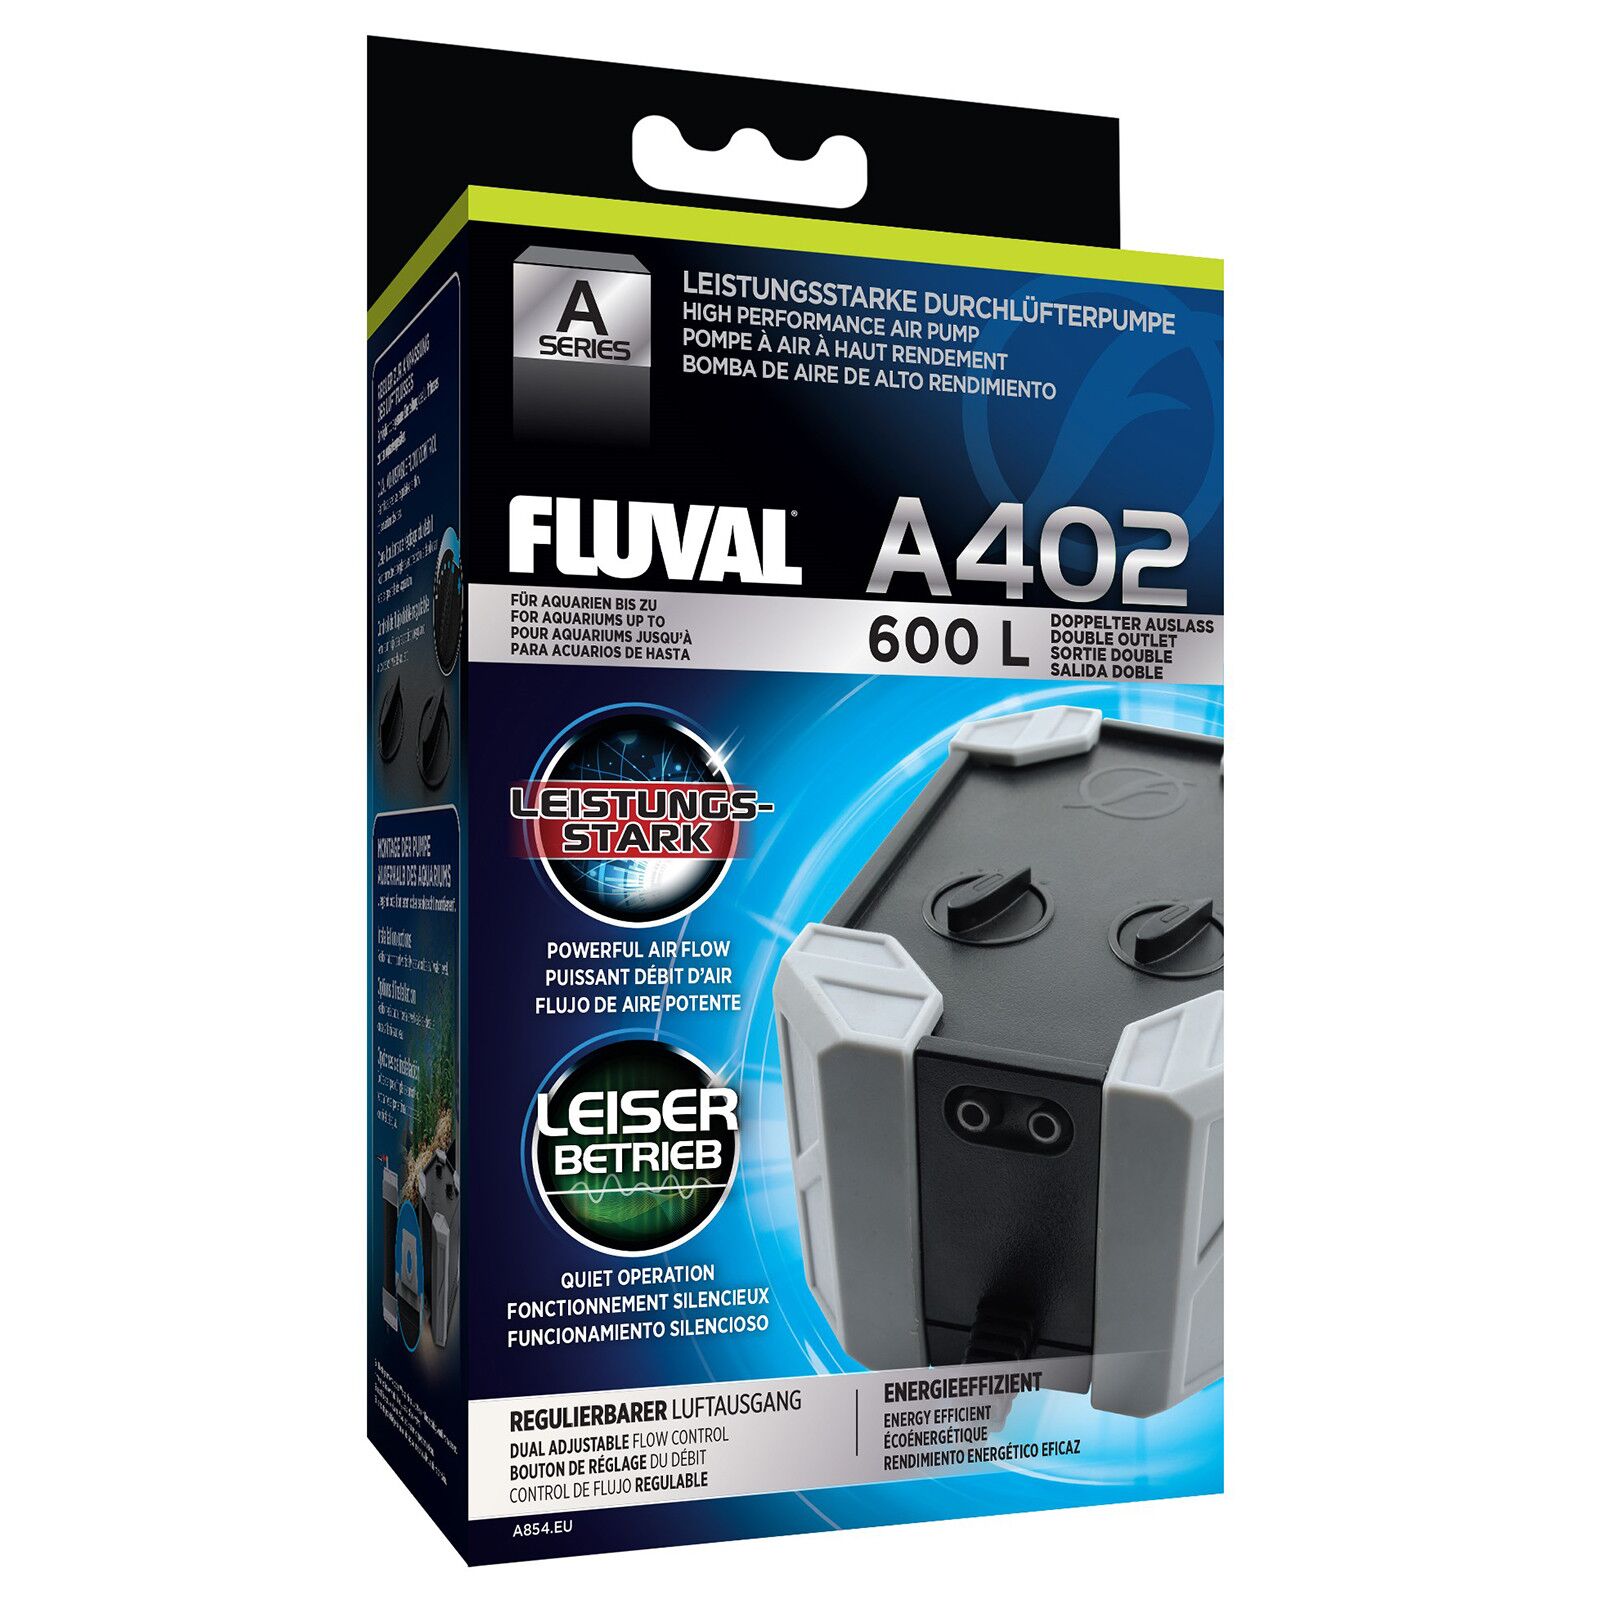 Fluval - Aerator pump for aquariums